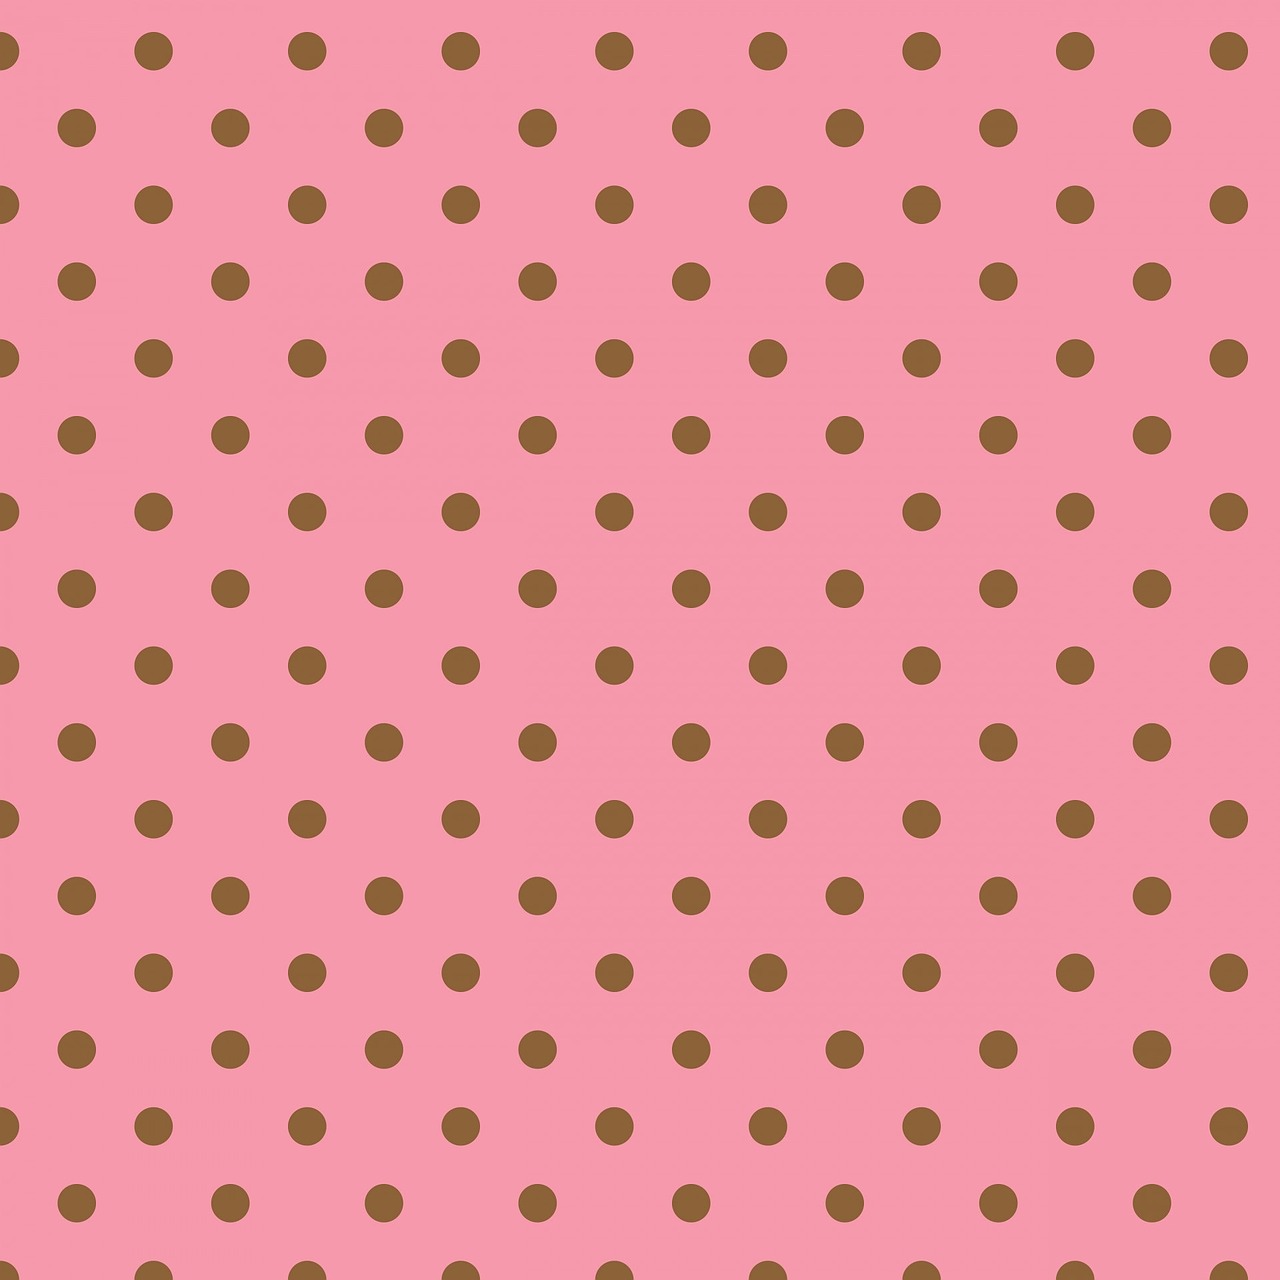 polka dots pink brown free photo